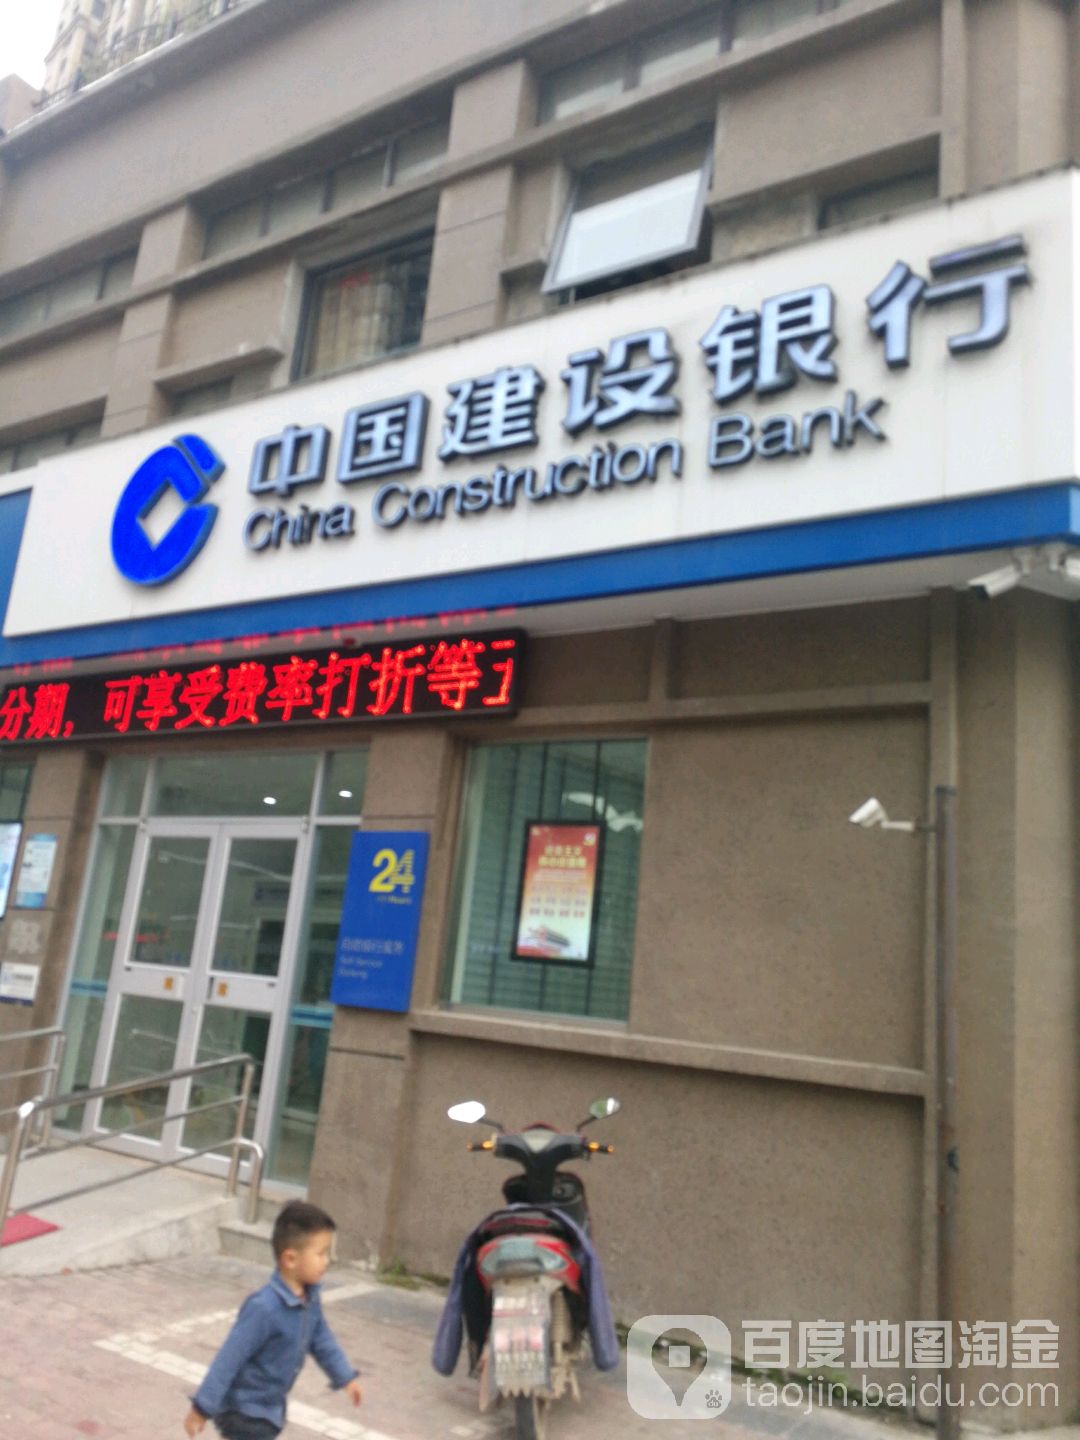 中国建设银行24小时自助银行(淮安生态新城支行)